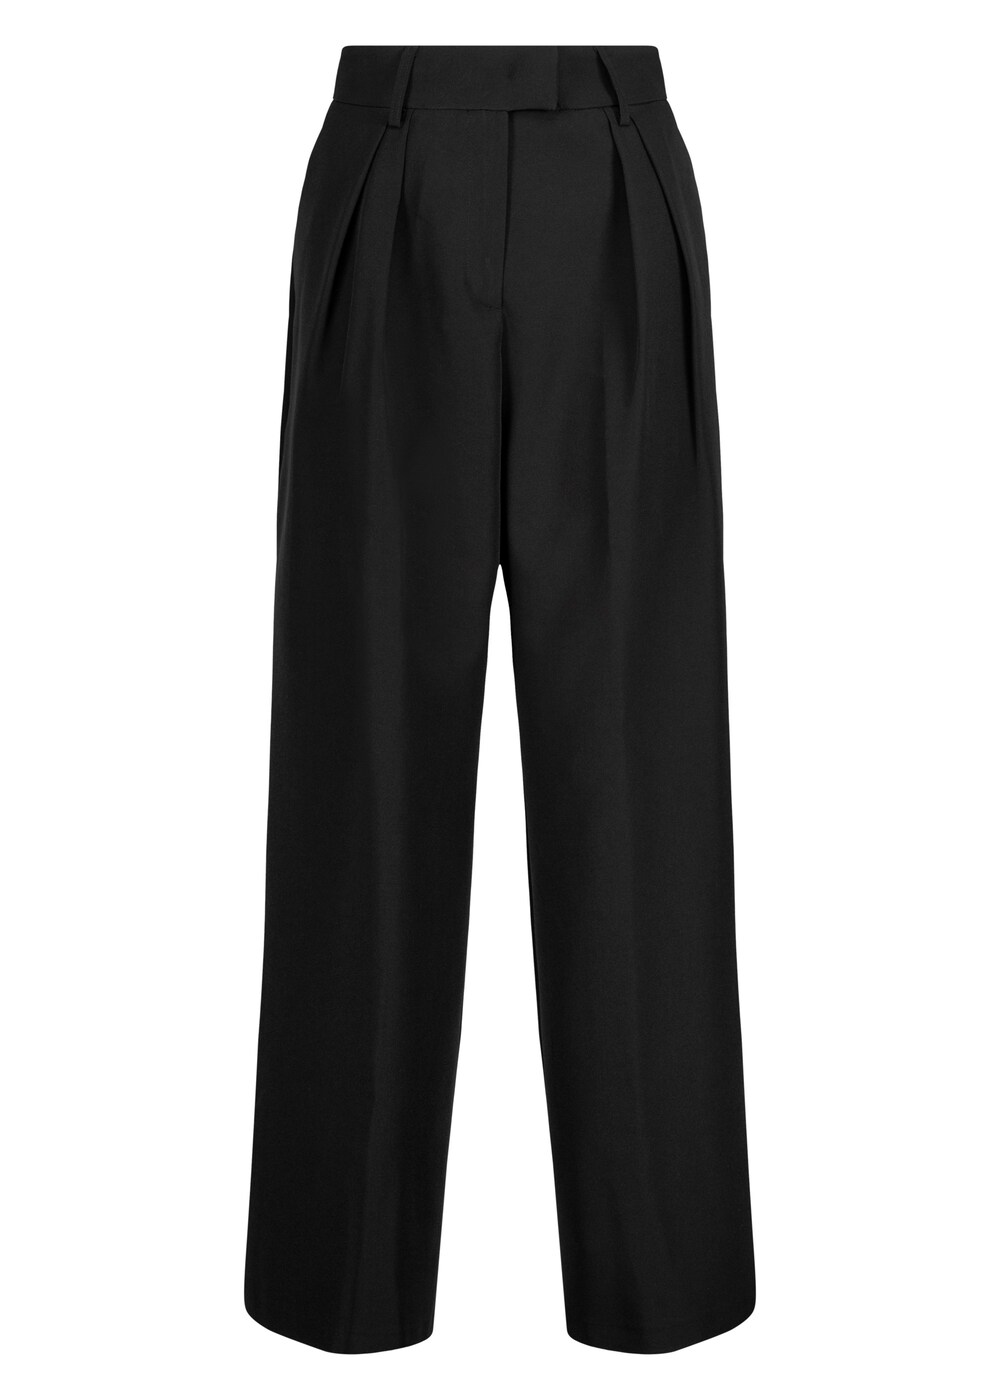 Широкие брюки со складками спереди Nicowa Ronica, черный широкие брюки nicowa setono белый